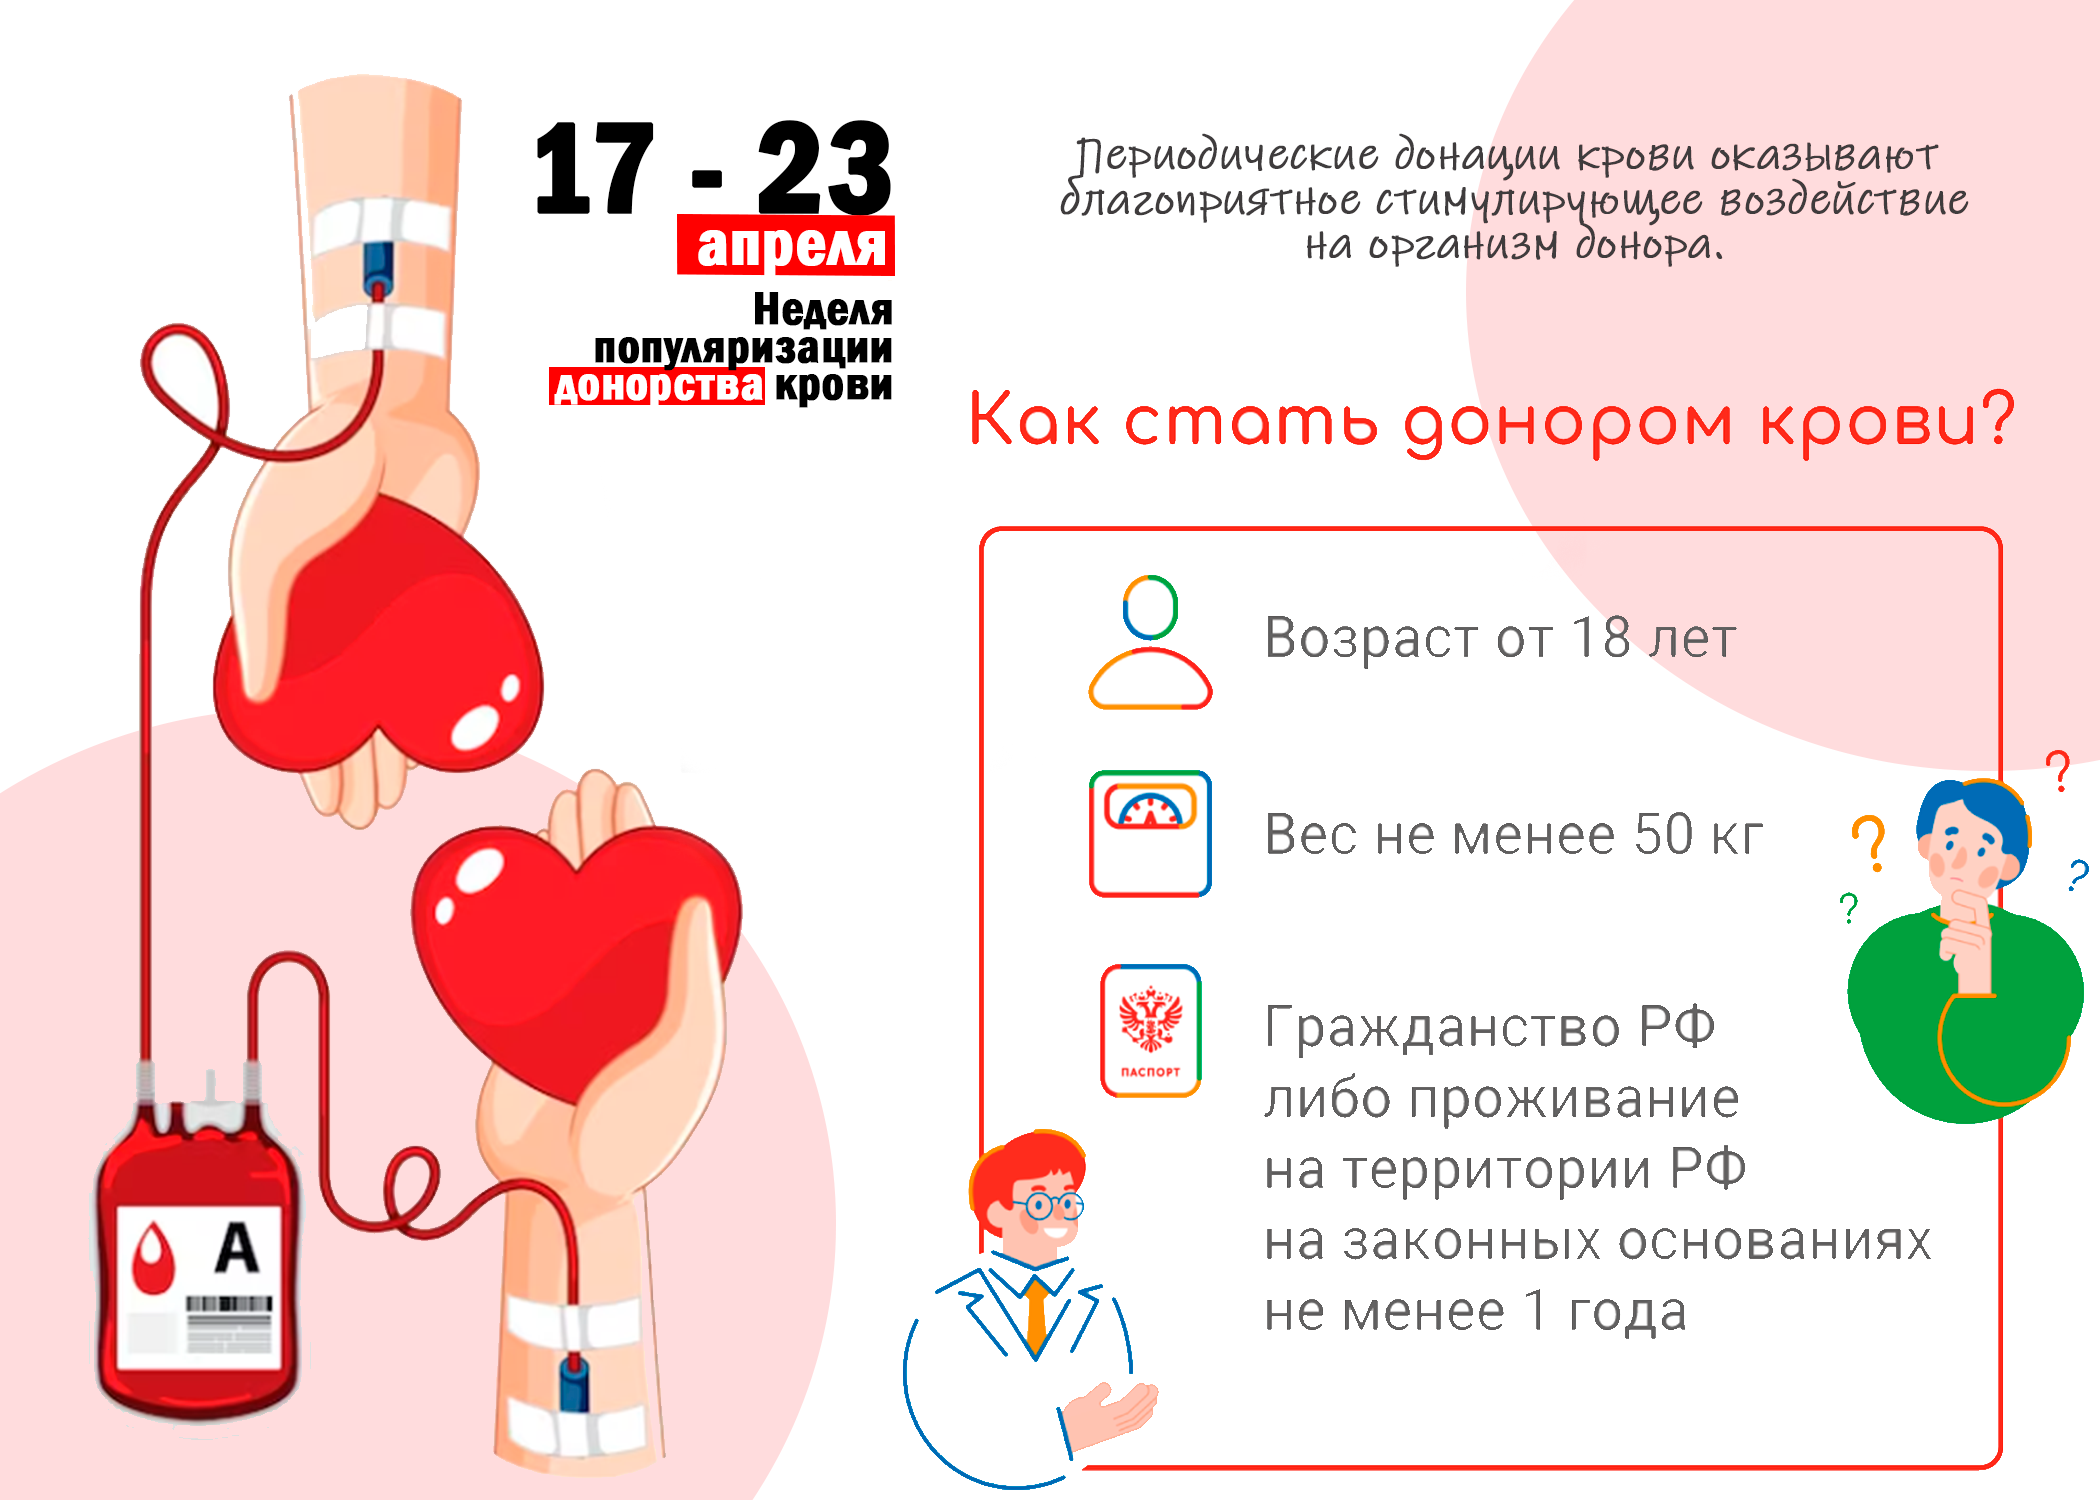 Неделя донорства крови. Донорство крови. Неделя донора крови. Донорство в России. День донора крови в России.